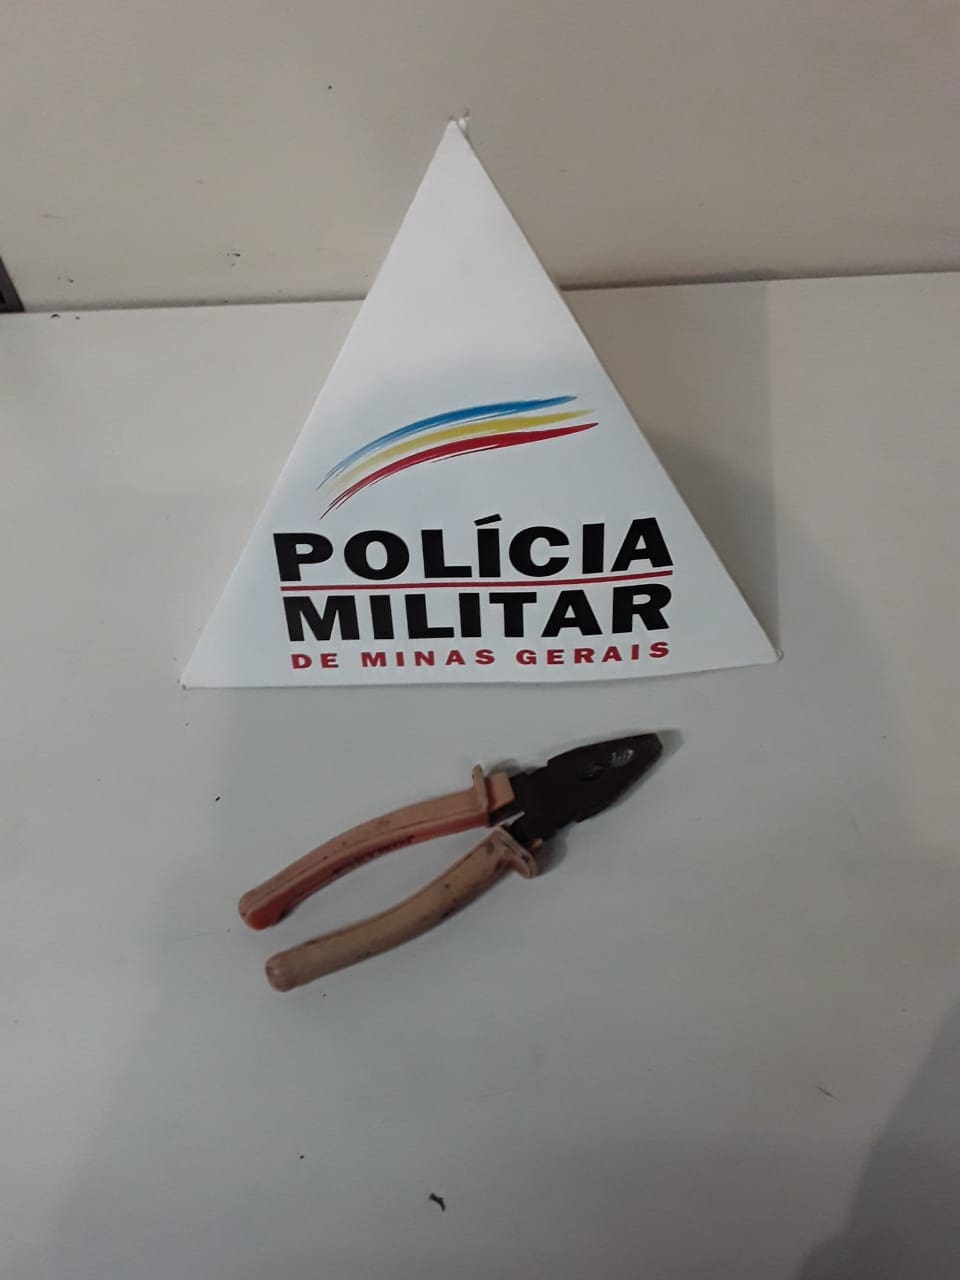 Divinópolis – Polícia Militar prende, em flagrante, suspeitos de furto